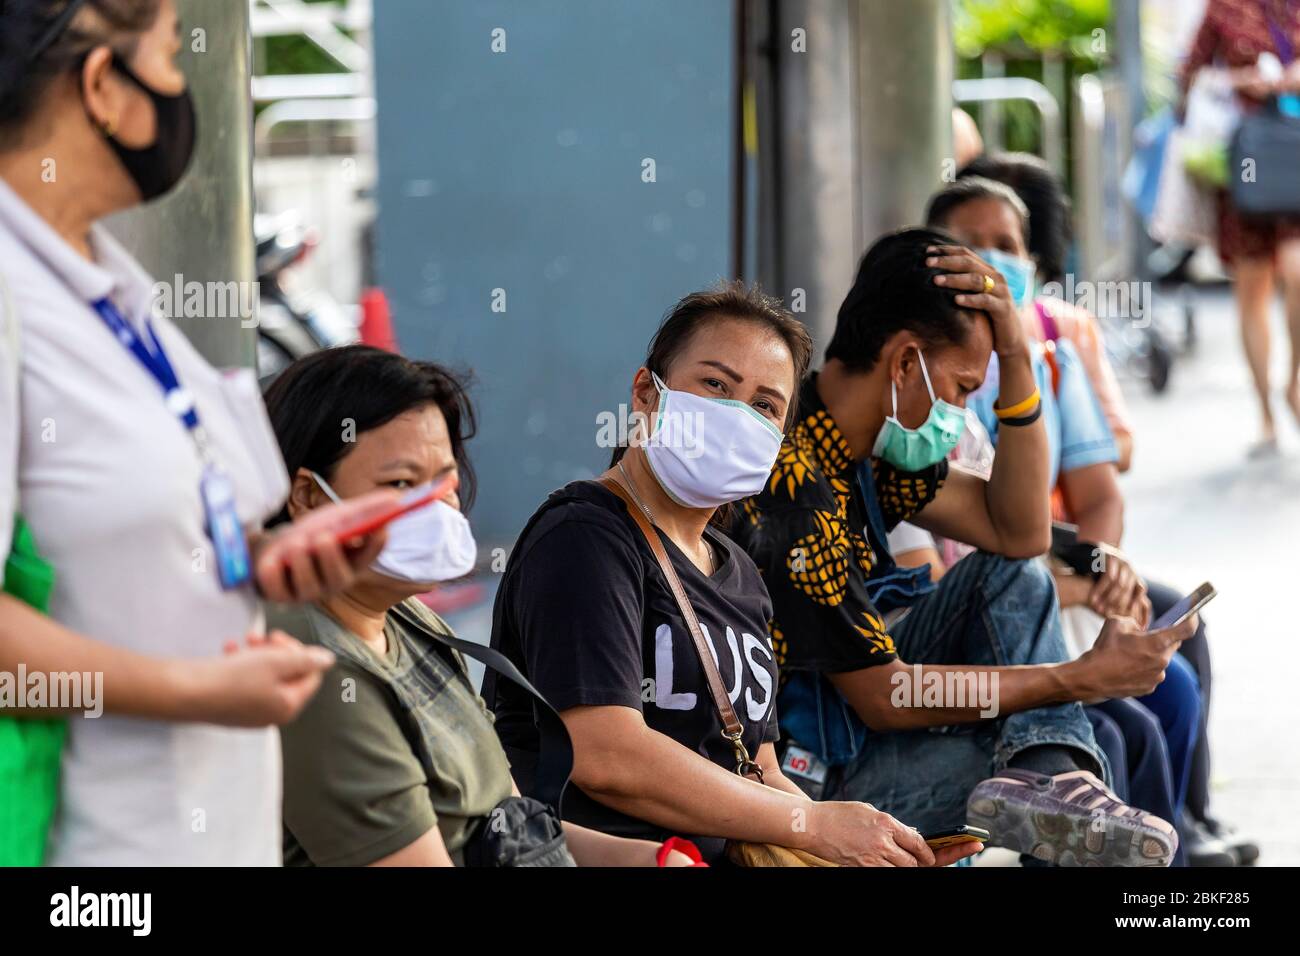 Passagiere mit Gesichtsmaske und sozialer Distanz während der Covid 19 Epidemie, Bangkok, Thailand Stockfoto